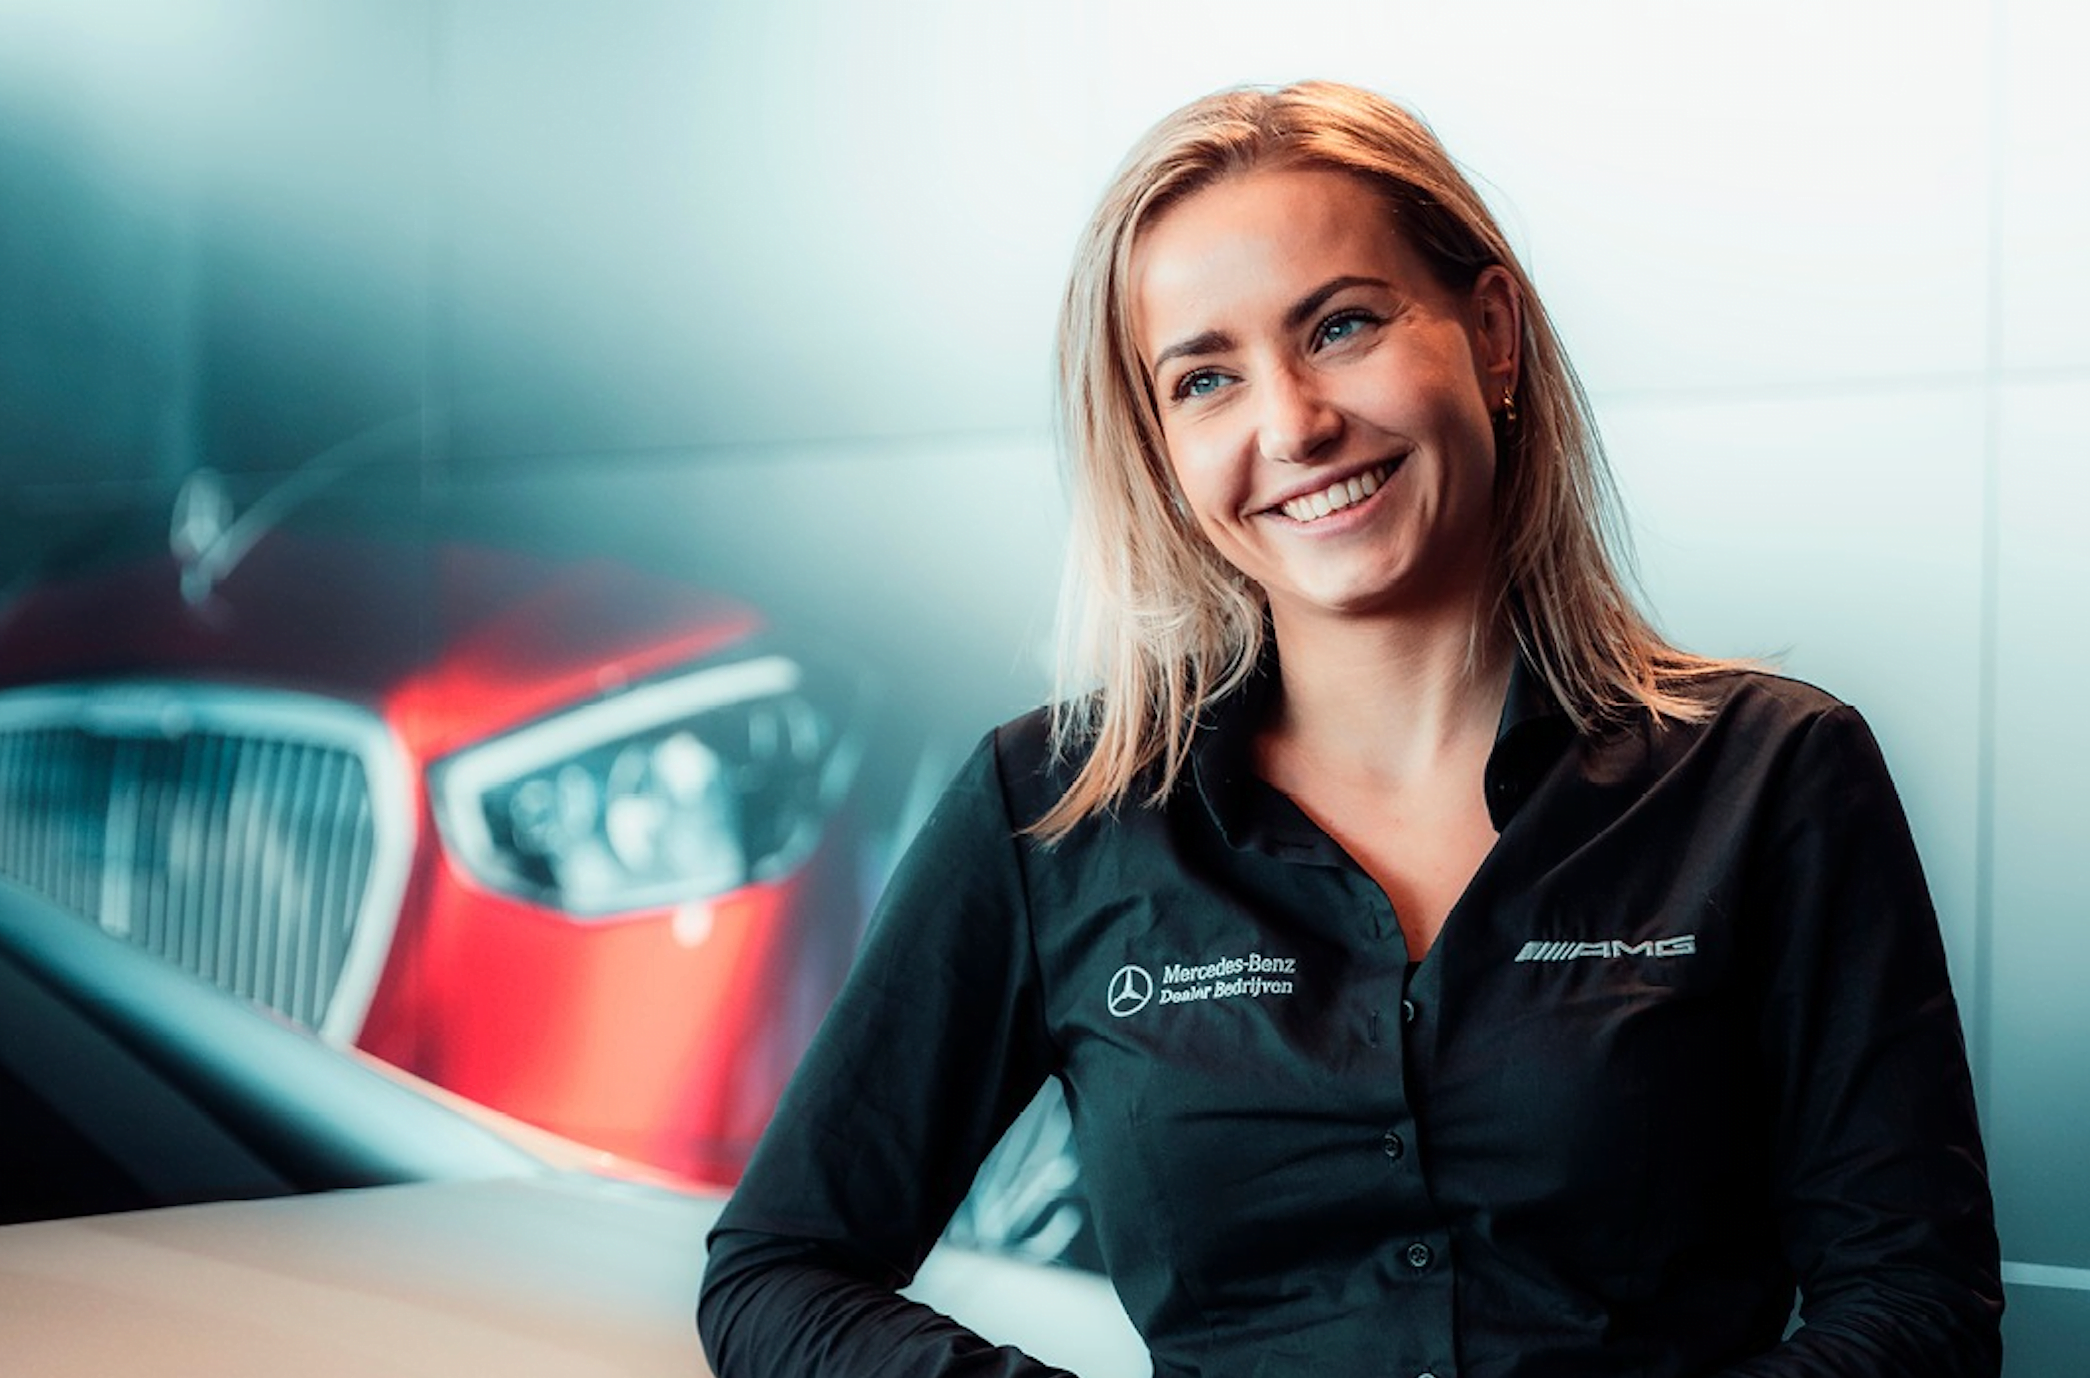 Poznaj Romy, eksperta ds. produktów Mercedes-Benz